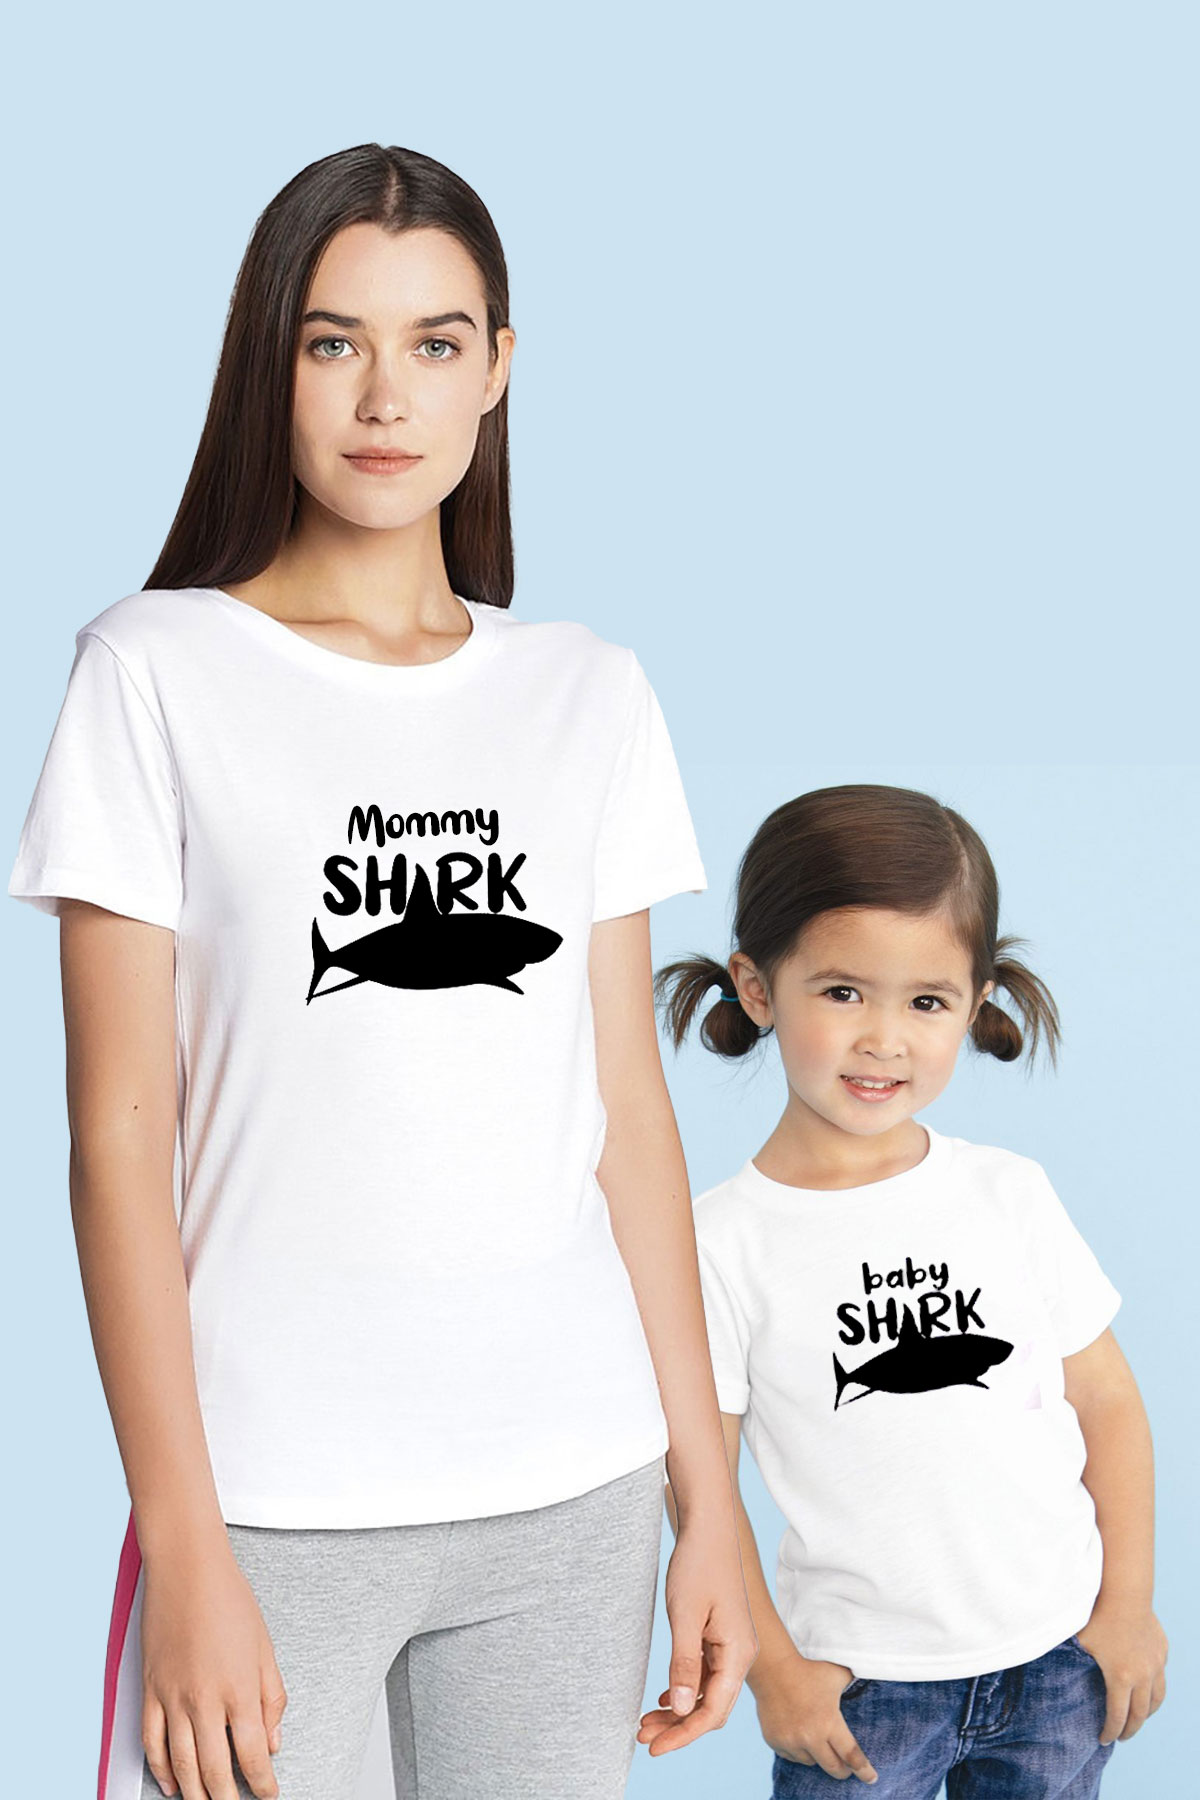 Mommy Shark Baby Shark Anne Çocuk(TEK ÜRÜN FİYATIDIR KOMBİN YAPMAK İÇİN 2 ADET SEPETE EKLEYİNİZ)